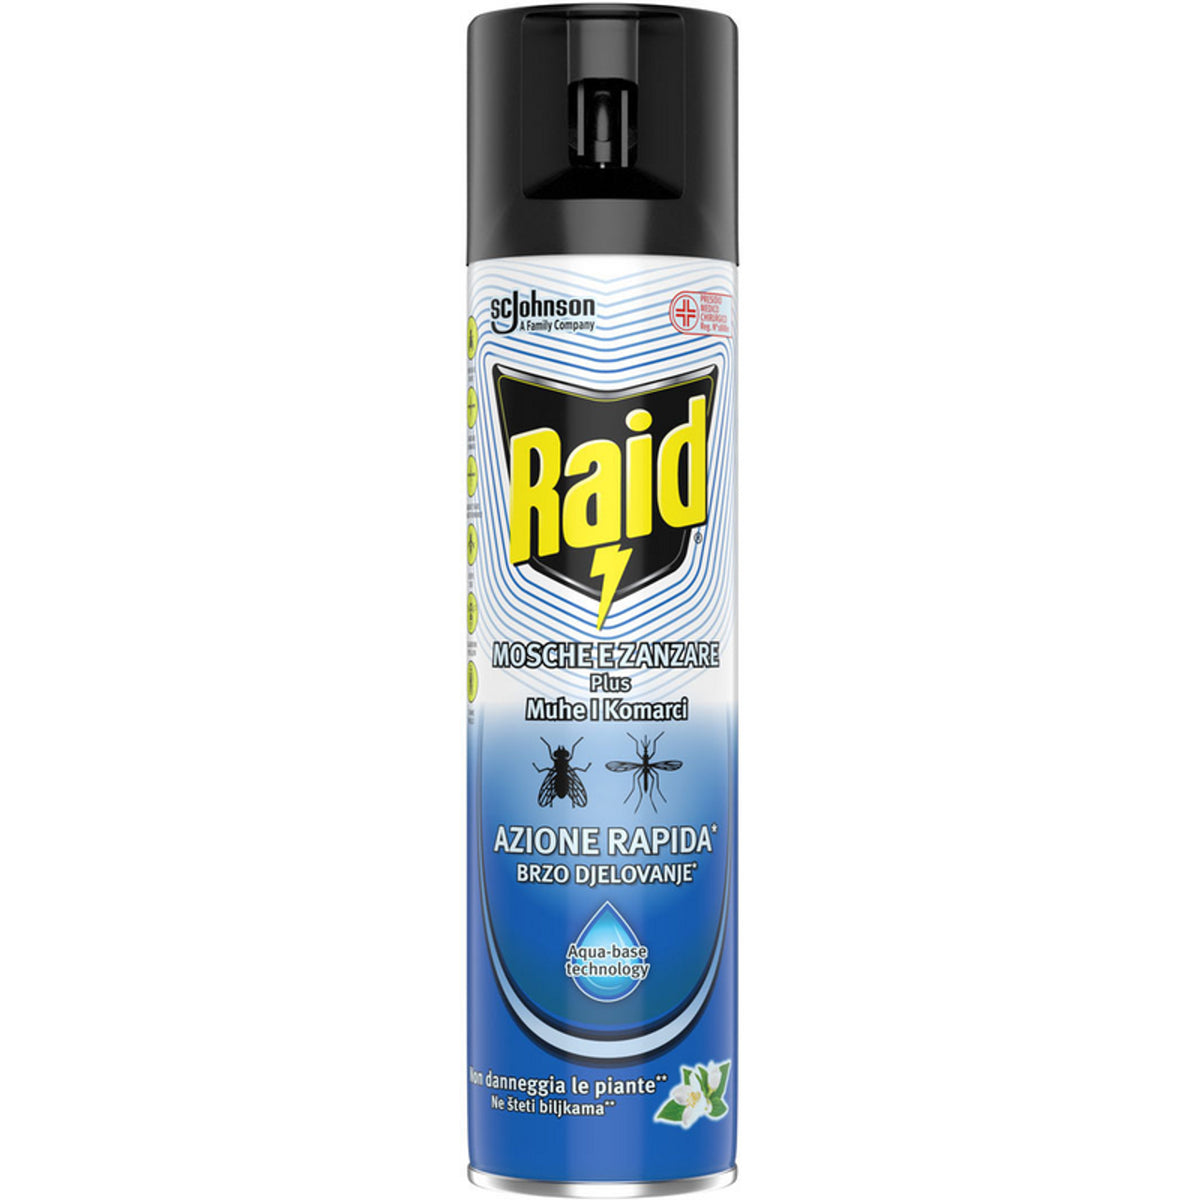 RAID SPRAID SPROID PROID και κουνούπια συν ταχεία δράση Aqua-Base Technology 400 ml